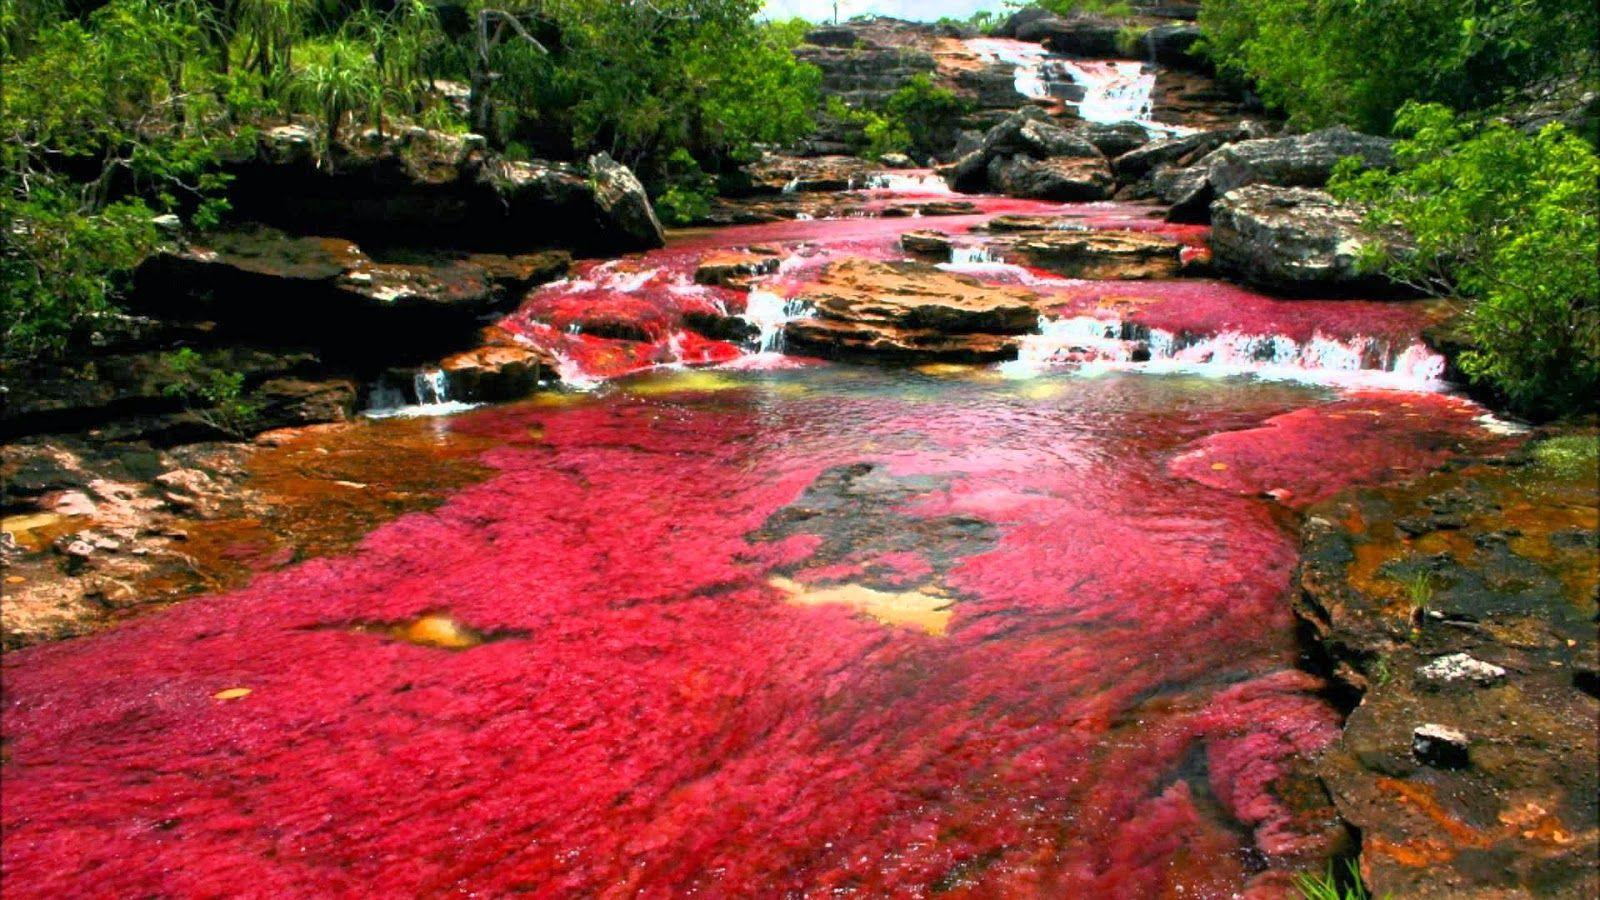 Dòng sông ngũ sắc tuyệt đẹp như tranh vẽ trong vườn quốc gia Colombia - 1